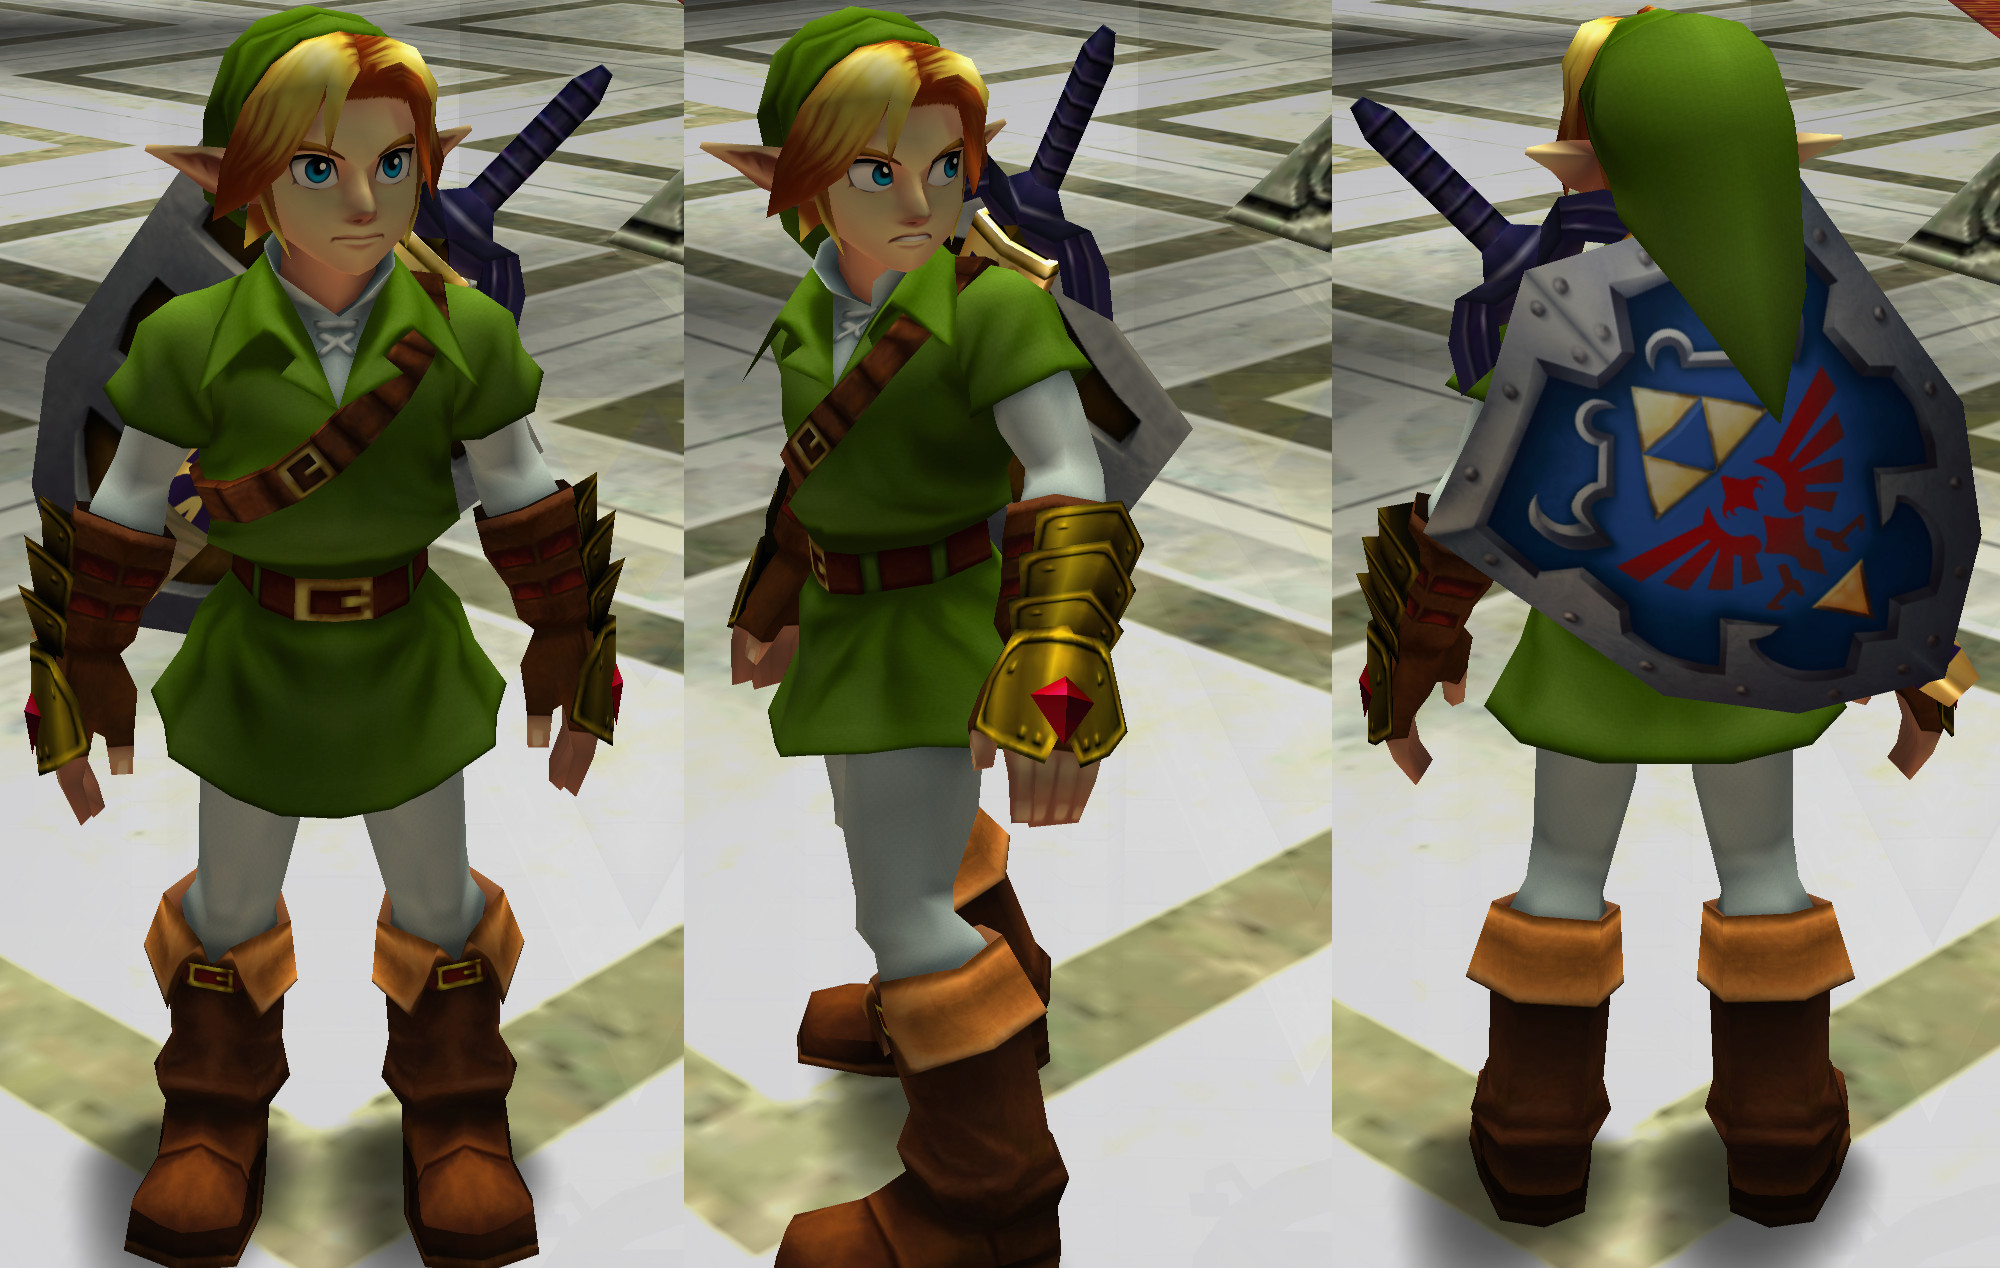 Legend of Zelda Nintendo 64 mod game links Ocarina of Time, Majora's Mask